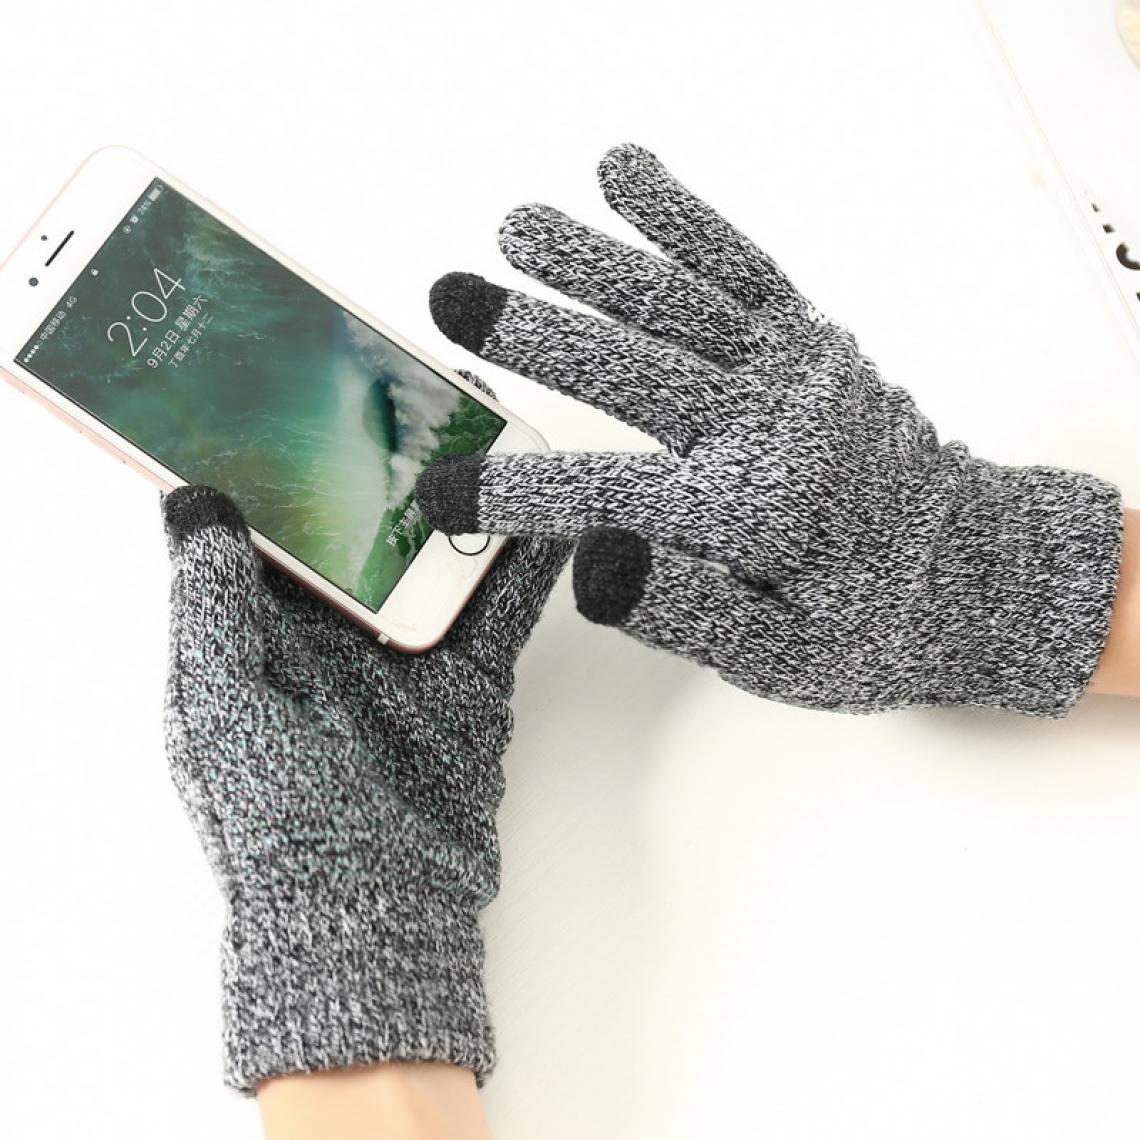 Shot - Gants Homme tactiles pour HUAWEI P20 Smartphone Taille M 3 doigts Hiver (GRIS) - Autres accessoires smartphone